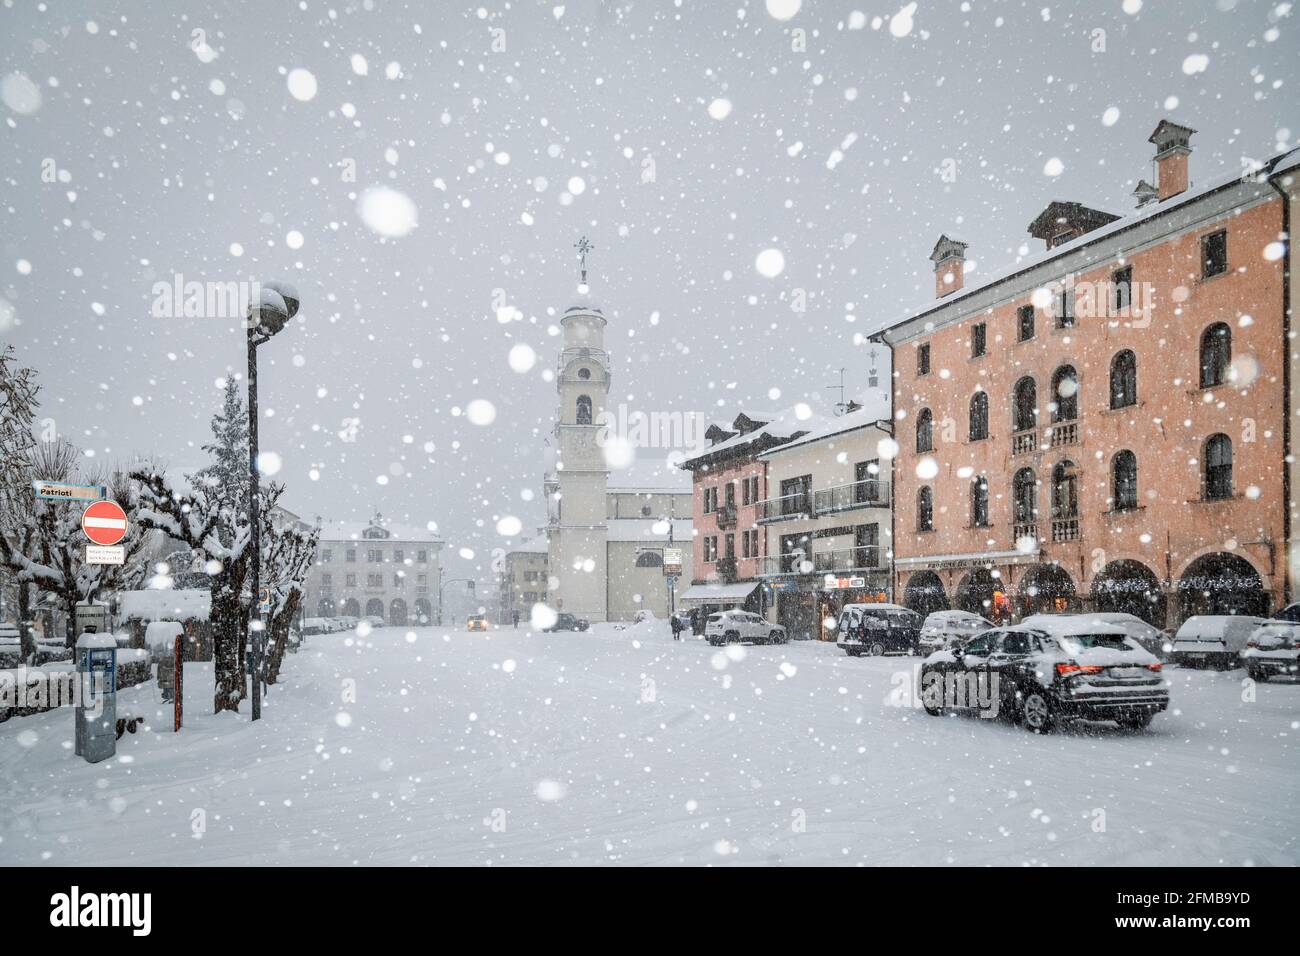 agordo, das Stadtzentrum unter starkem Schneefall, Provinz Belluno, Venetien, Italien Stockfoto